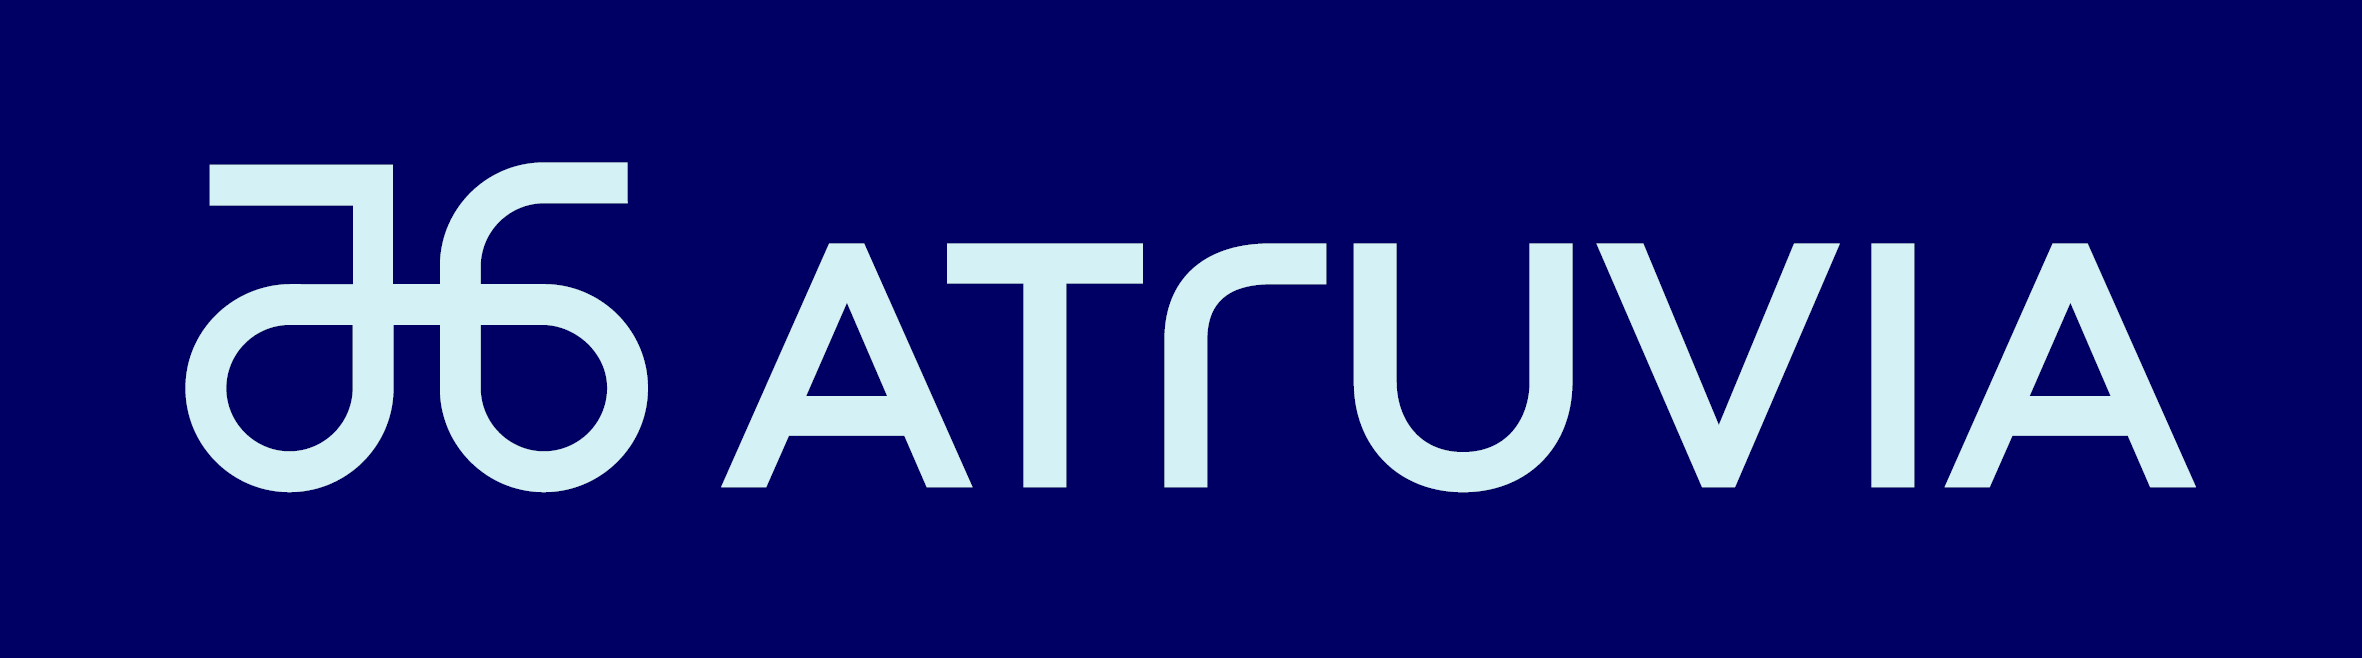 Logo Atruvia